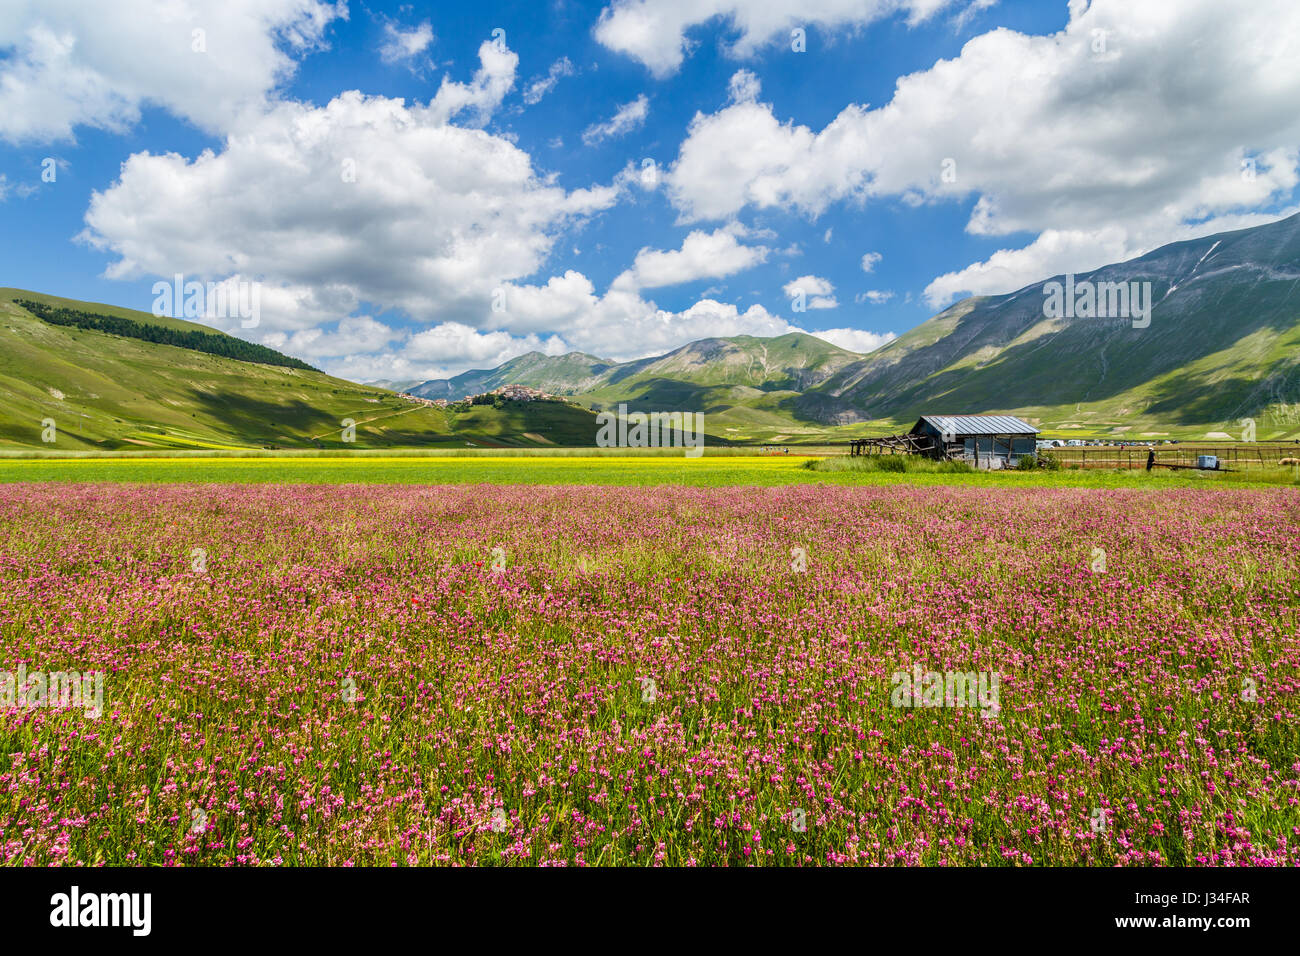 Hermoso paisaje de verano en Piano Grande (Gran Llanura) meseta montañosa en los Apeninos, Castelluccio di Norcia, Umbría. Foto de stock